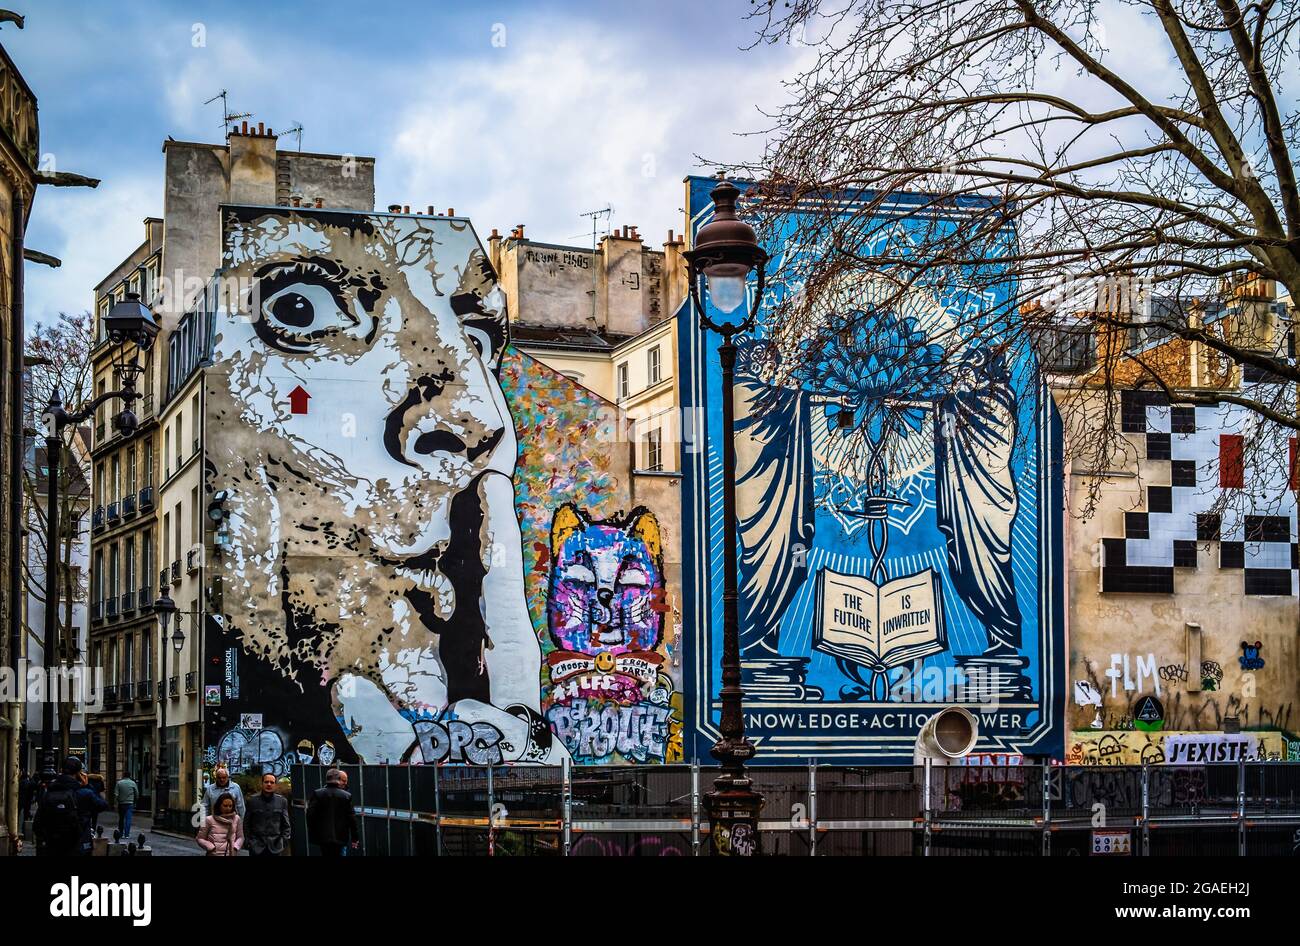 Paris, France, février 2020, vue de la fresque murale Chuuuttt!!Par l'artiste Jef Aerosol, à côté d'une fresque nommée Knowledge + action par Shepard Fairey Banque D'Images